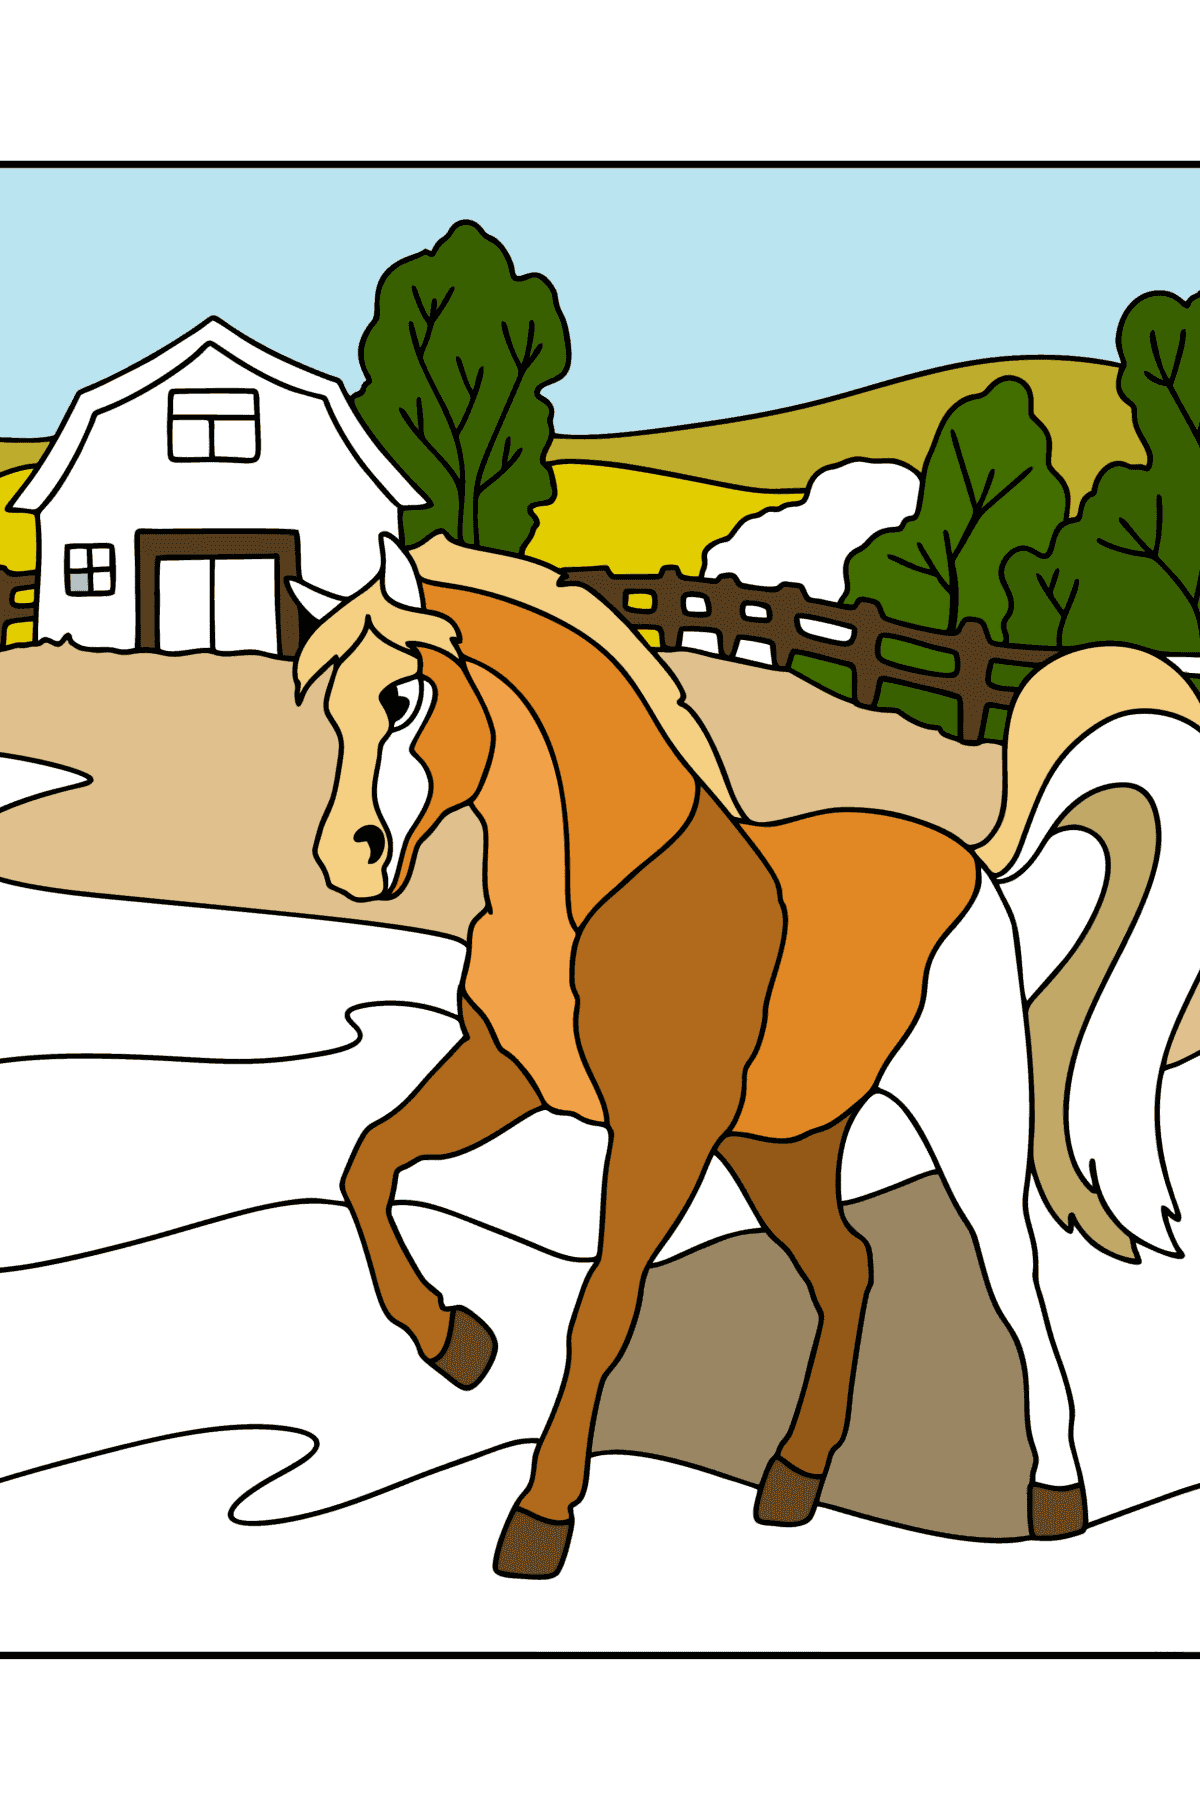 Kleurplaat Paard op de boerderij - kleurplaten voor kinderen